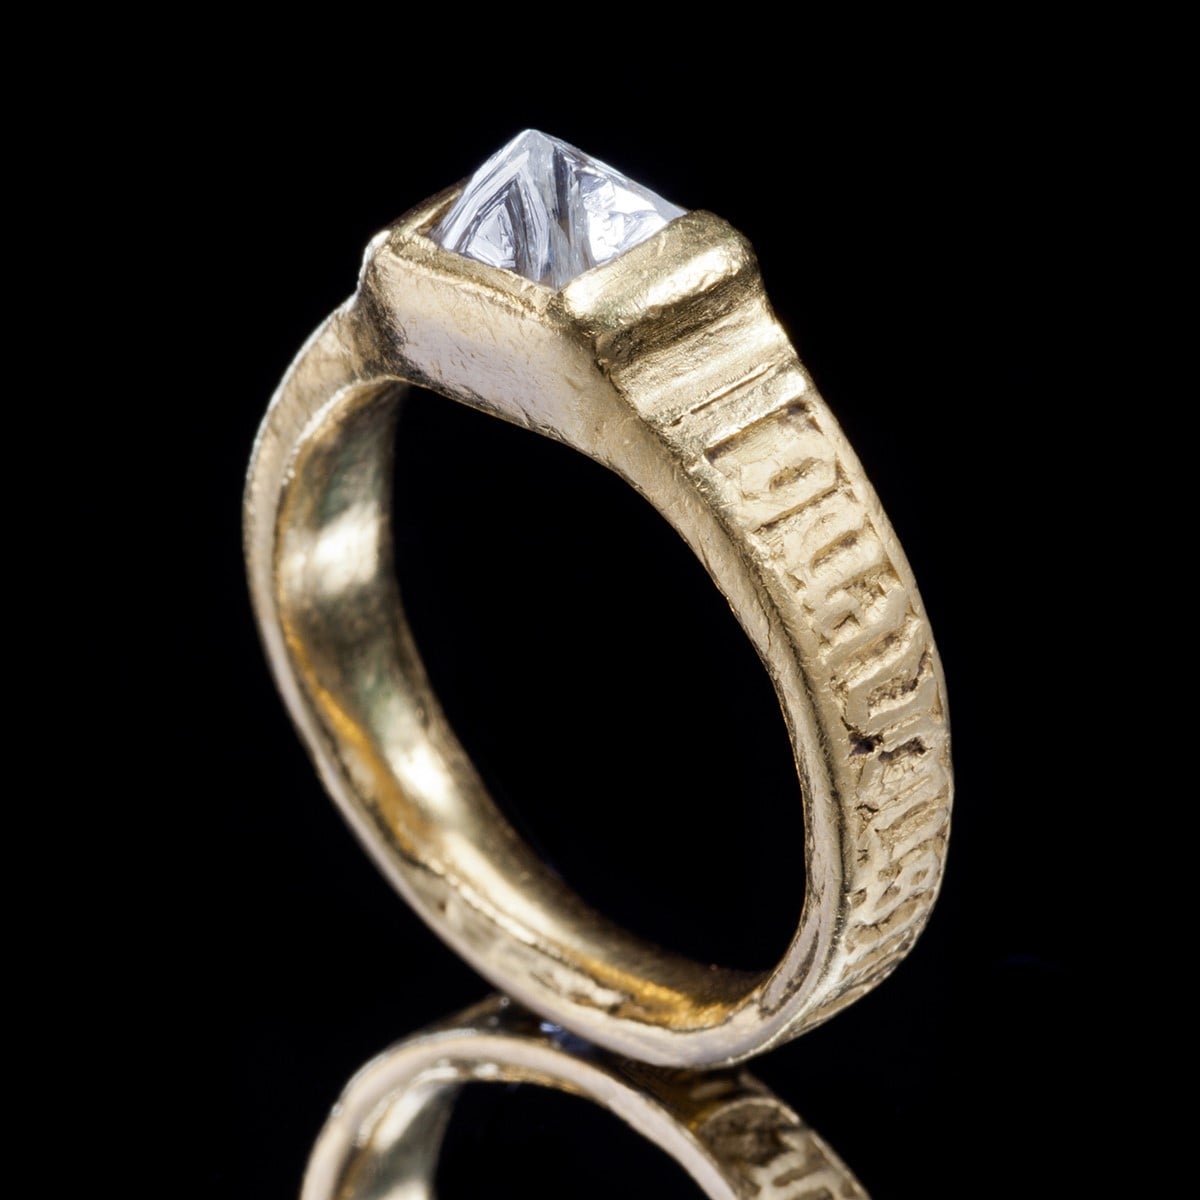 再現了15世紀設計的「原鑽」戒指。指環上用諾曼語刻著「長相伴，共相思」。「文藝復興」鑽戒。 22K黃金、鑽石。550,000日圓 含稅價